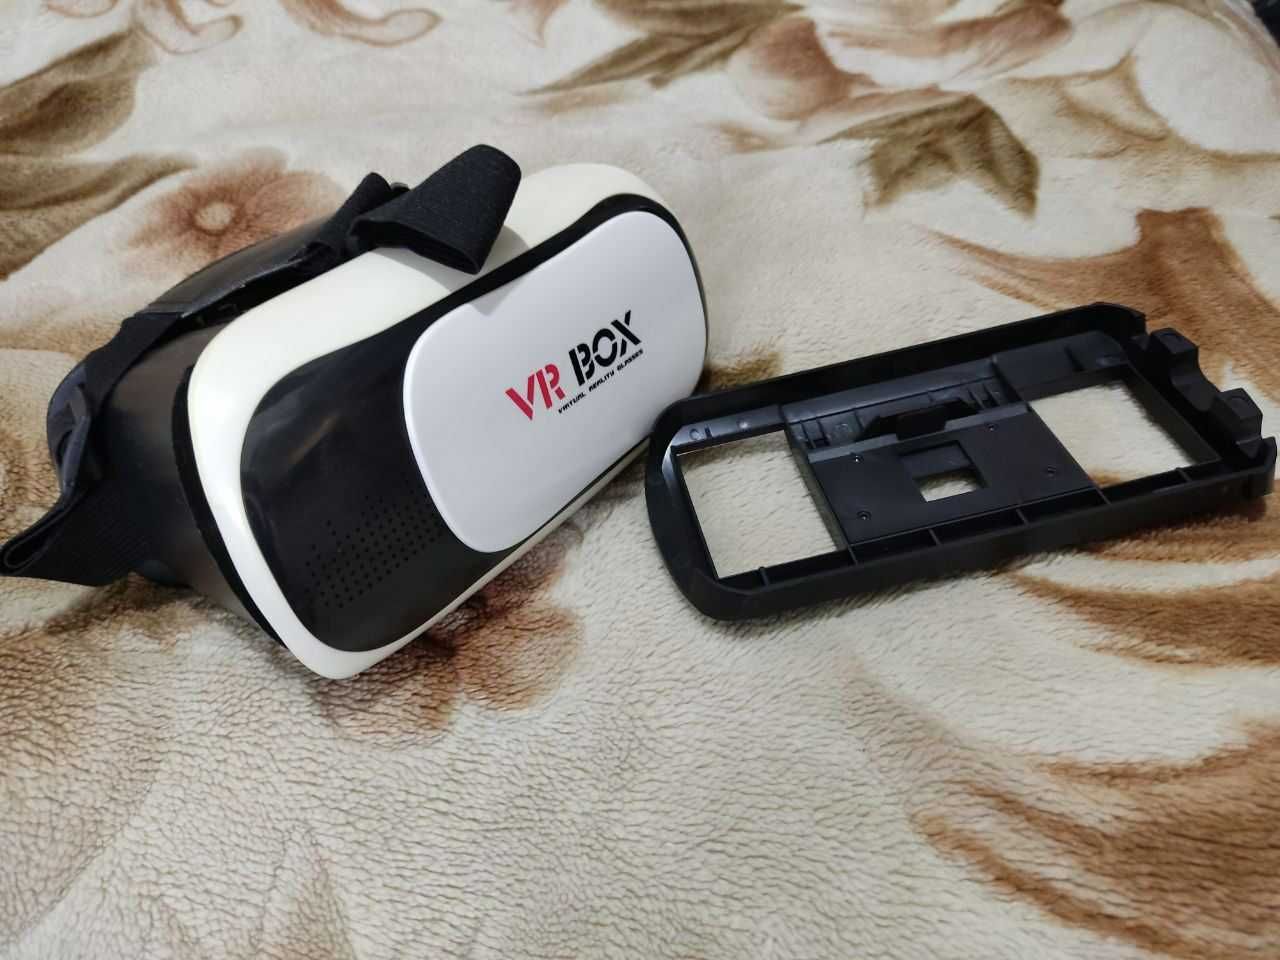 Продаётся VR BOX в идеальном состоянии. Цена 100 тыс. сум.